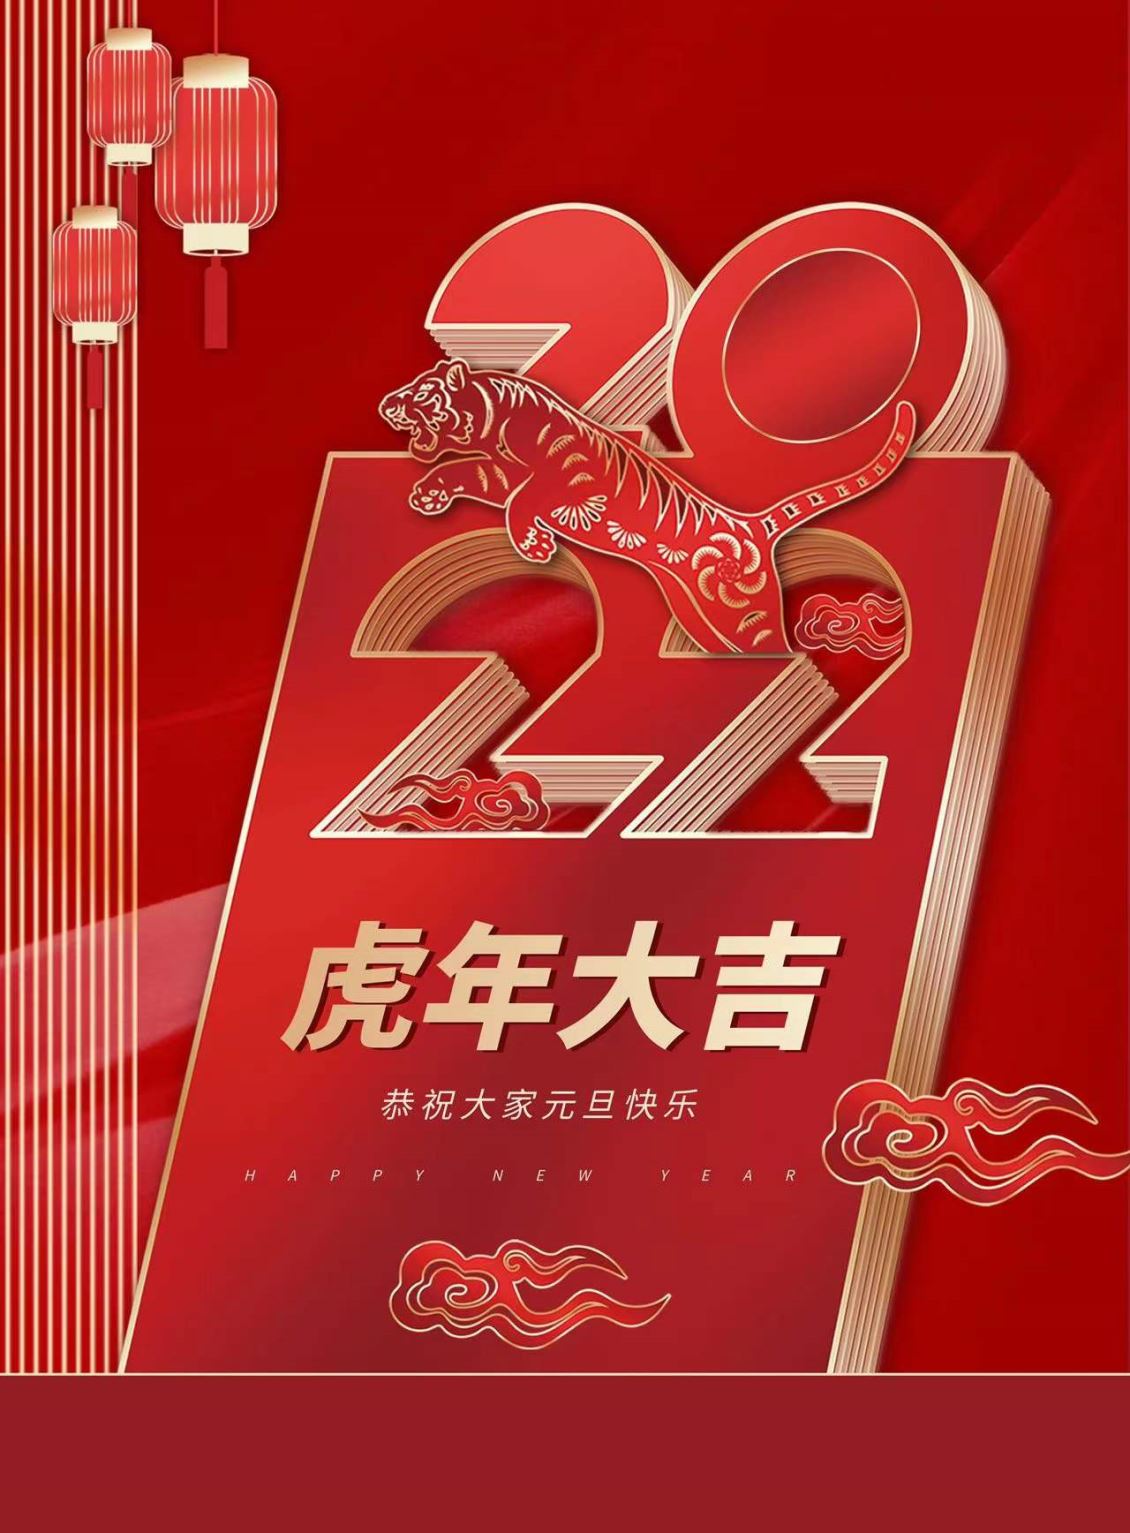 淮北安徽谷创网络科技有限公司与您携手共度元旦佳节！